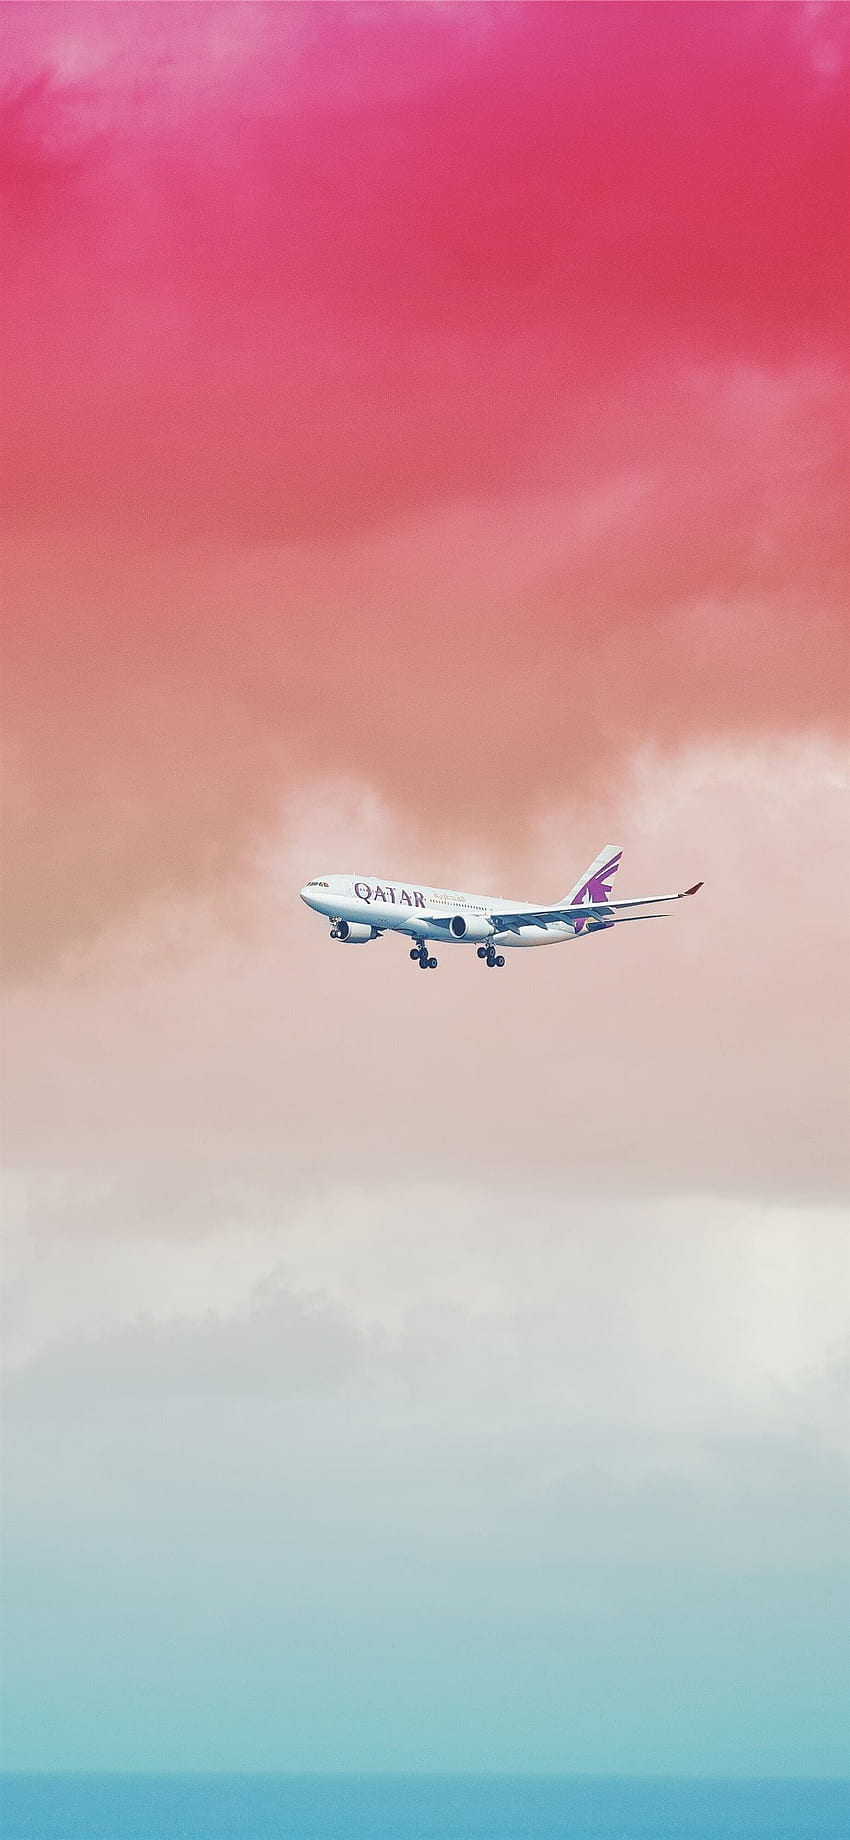 Pesawat Qatar Airlines terbang di bawah awan merah untuk. iPhone X, Logo Qatar Airways wallpaper ponsel HD